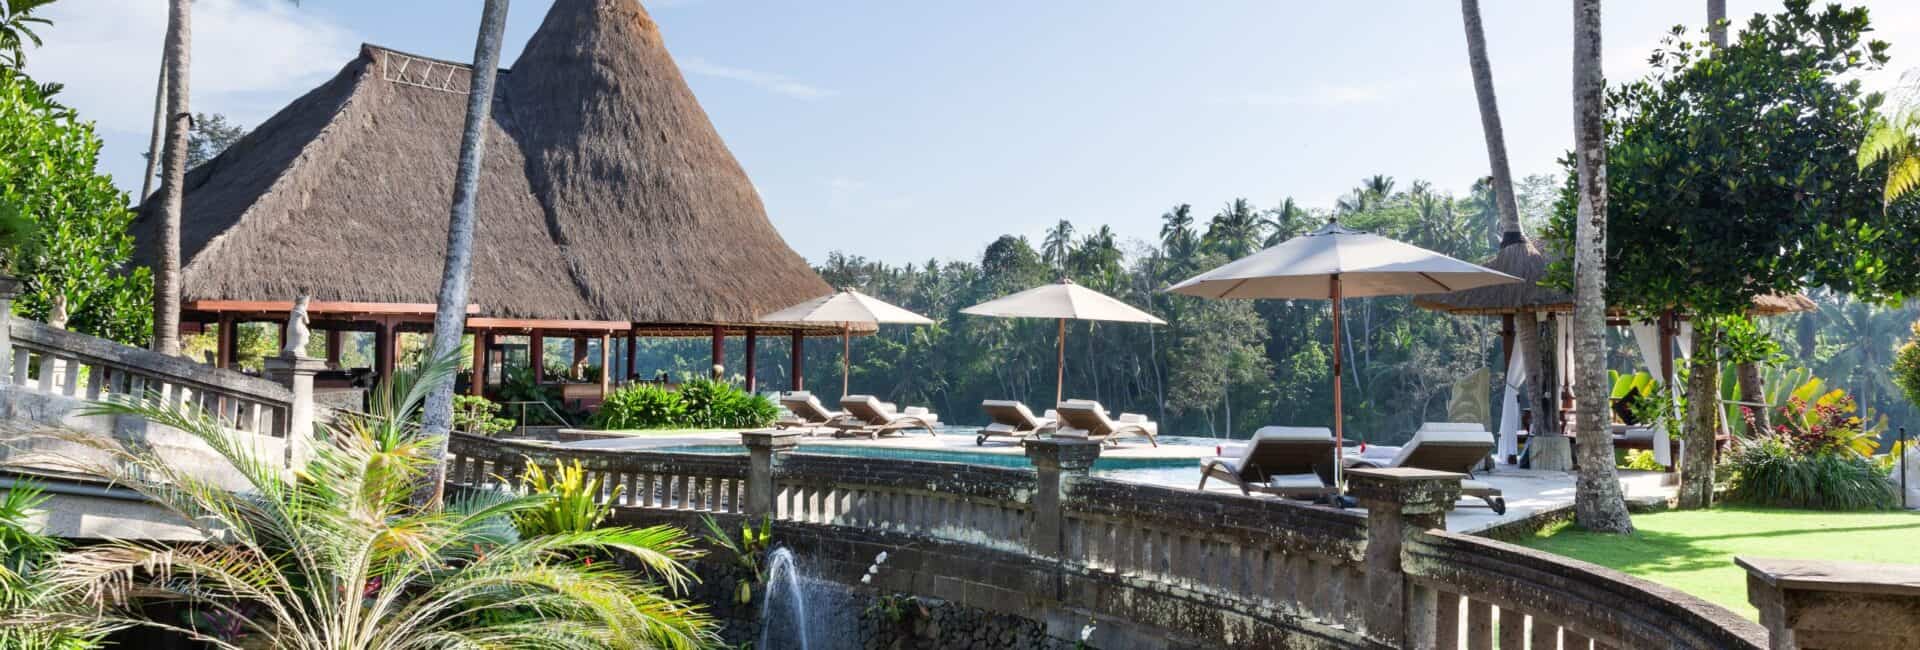 Viceroy Bali - Main Pool